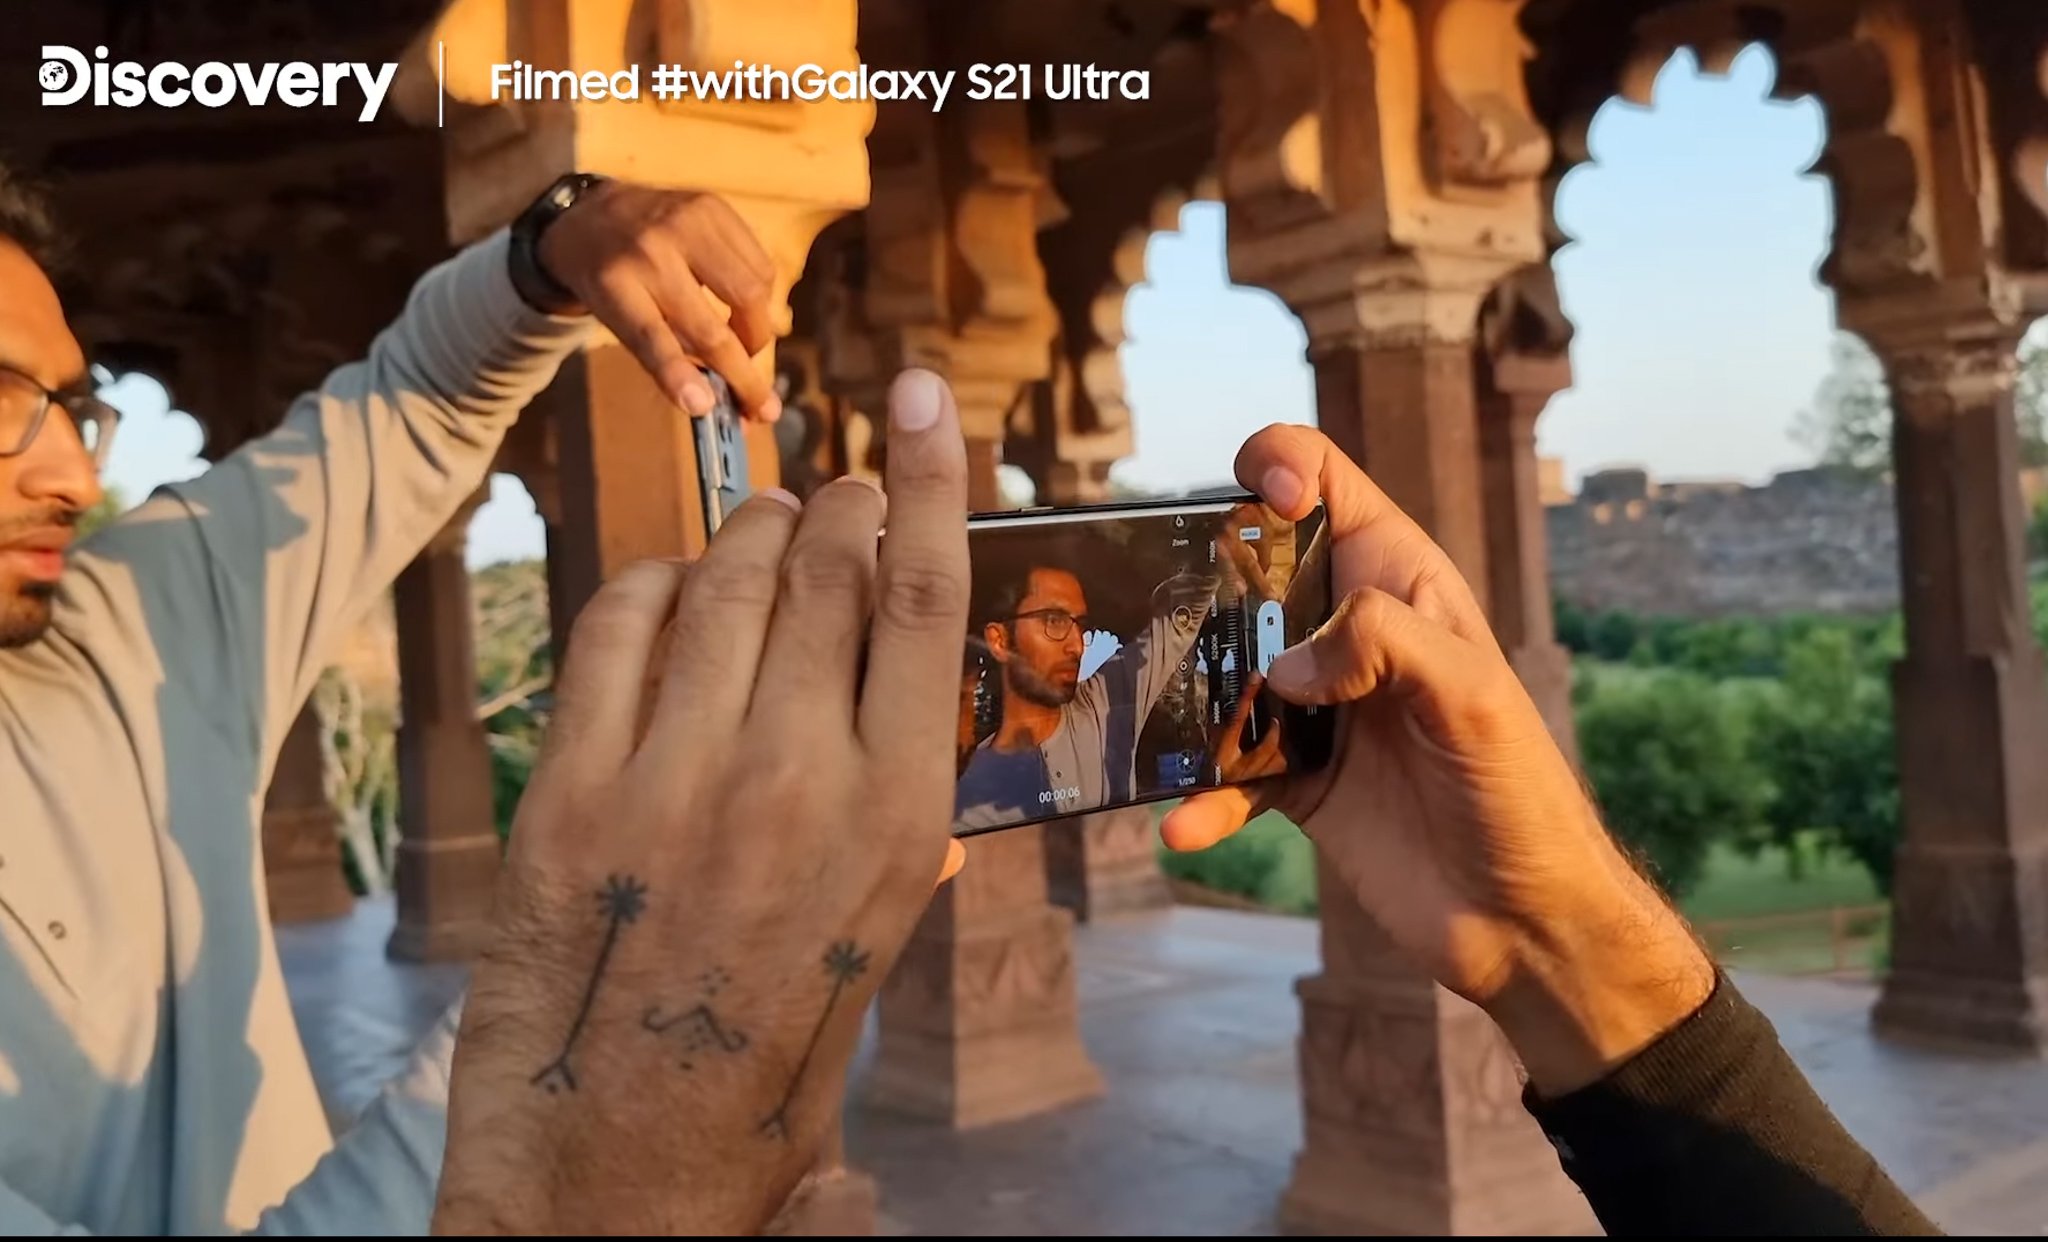 Samsung cùng Discovery ghi hình tài liệu những chú hổ bằng Galaxy S21 Ultra